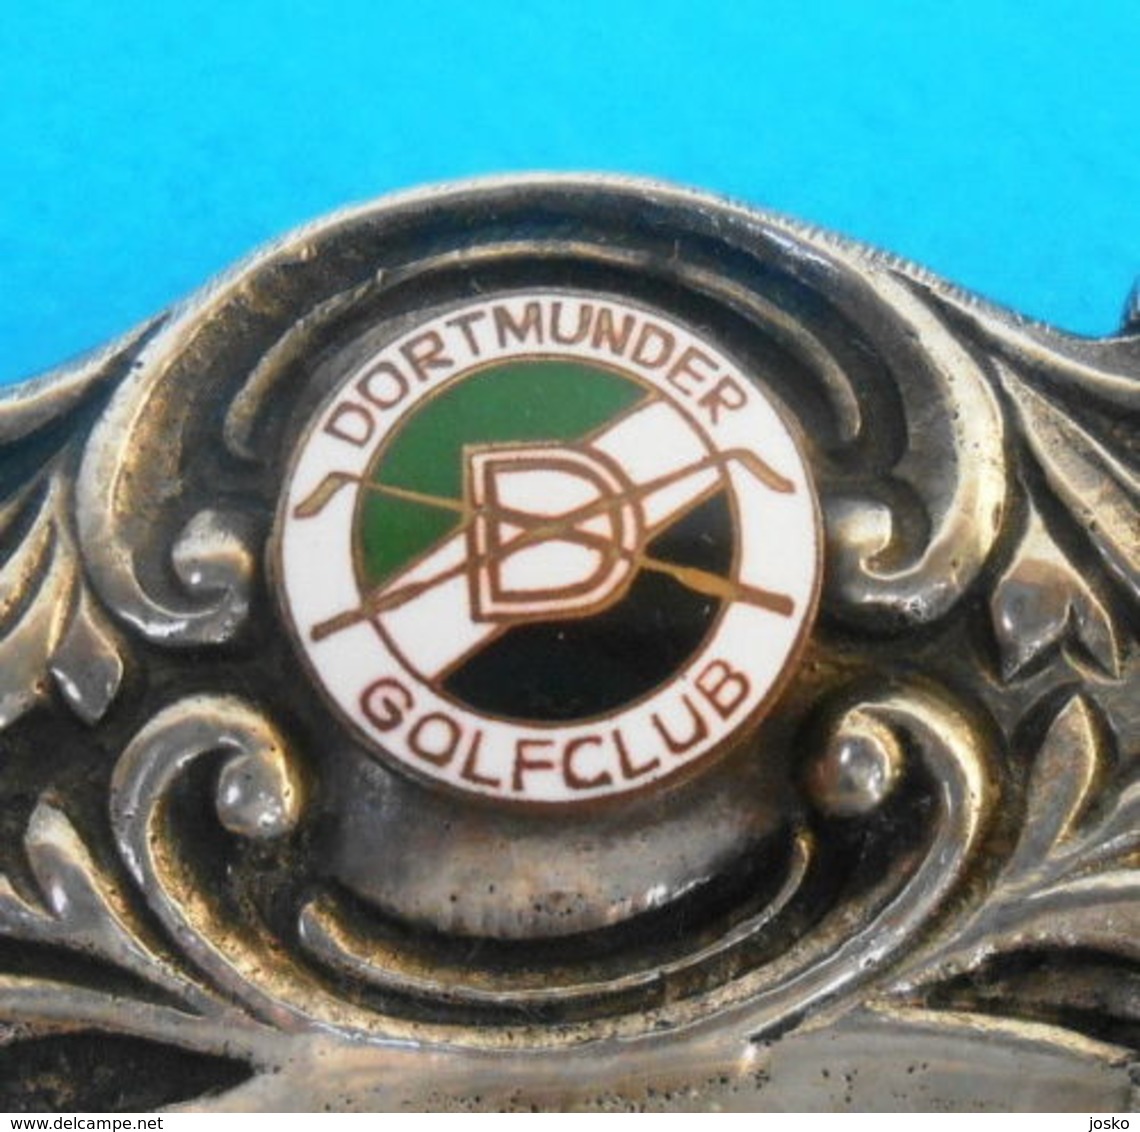 DORTMUNDER GOLFCLUB ( Dortmund - Germany ) ... STERLING SILVER Vintage Golf Trophy ( 1968. ) For 1st Place * Deutschland - Habillement, Souvenirs & Autres